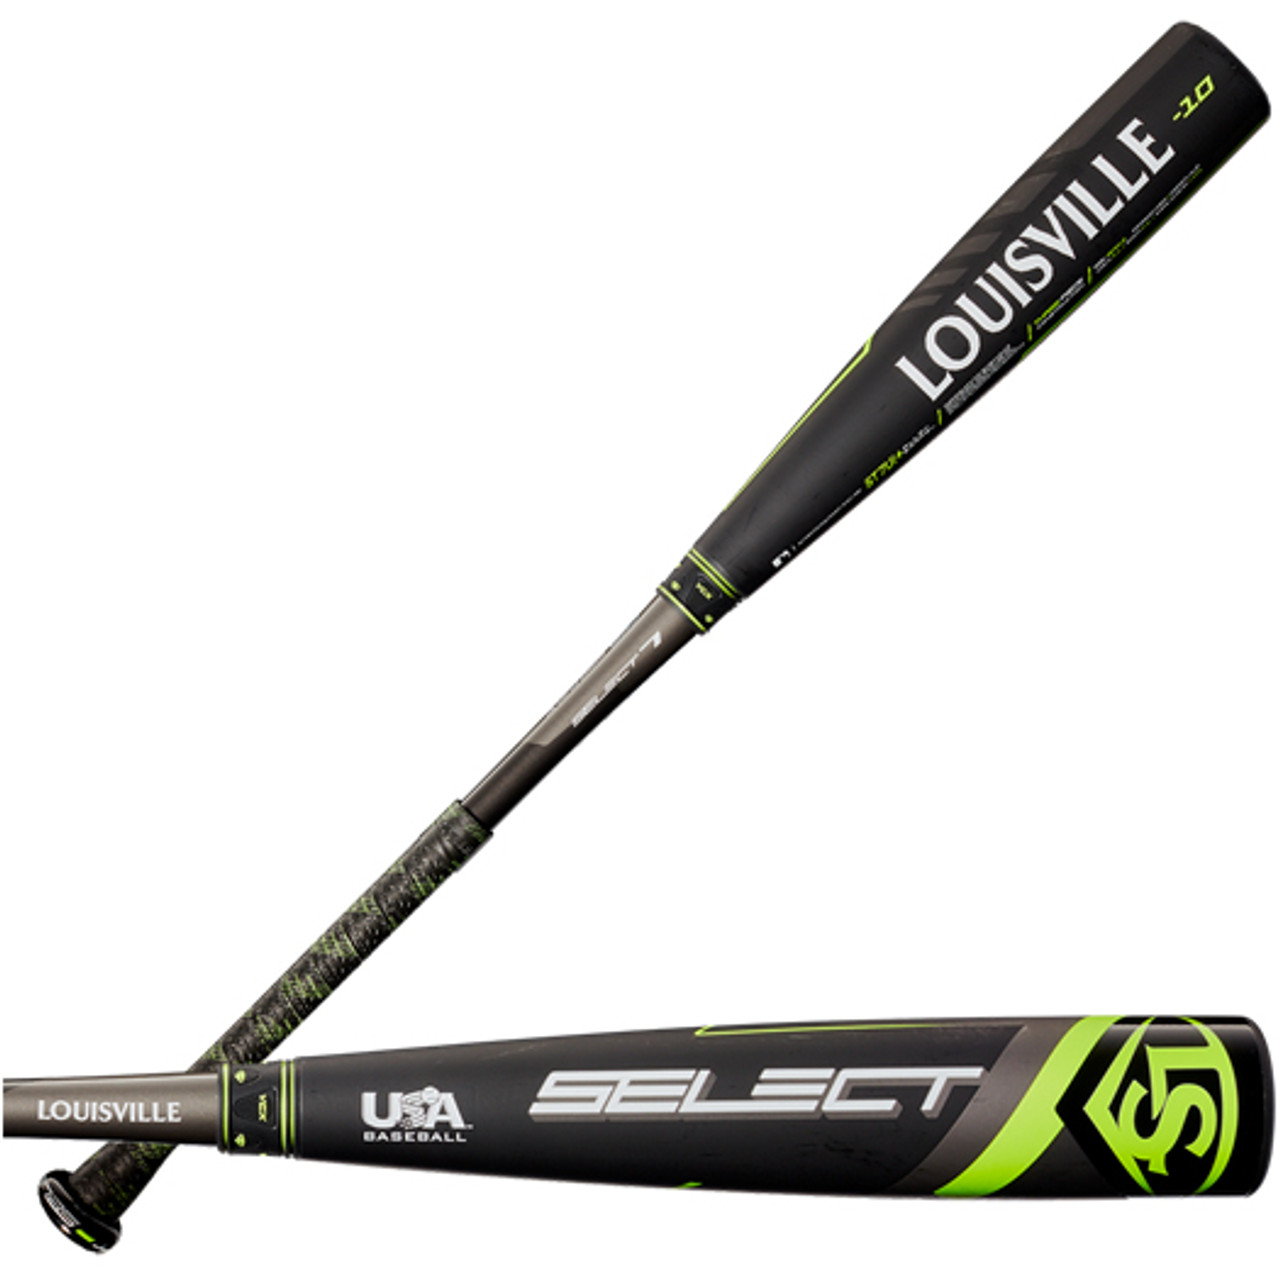 2020 Louisville Slugger Select -10 USA Baseball Bat WTLUBS7B10 - Bases Loaded